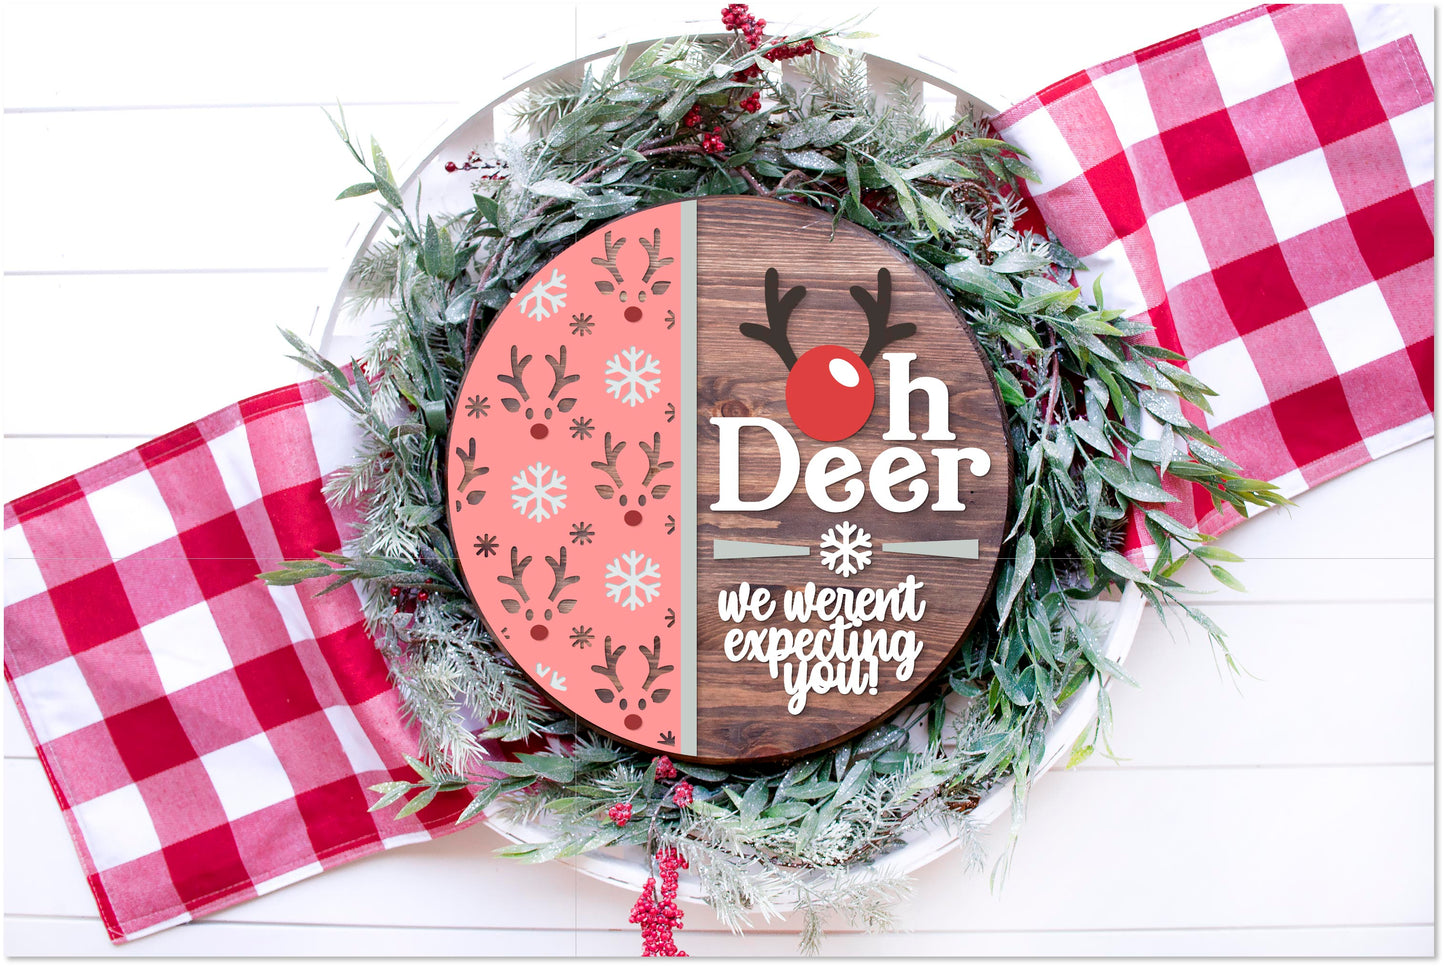 Oh deer Red nose reindeer Christmas door sign